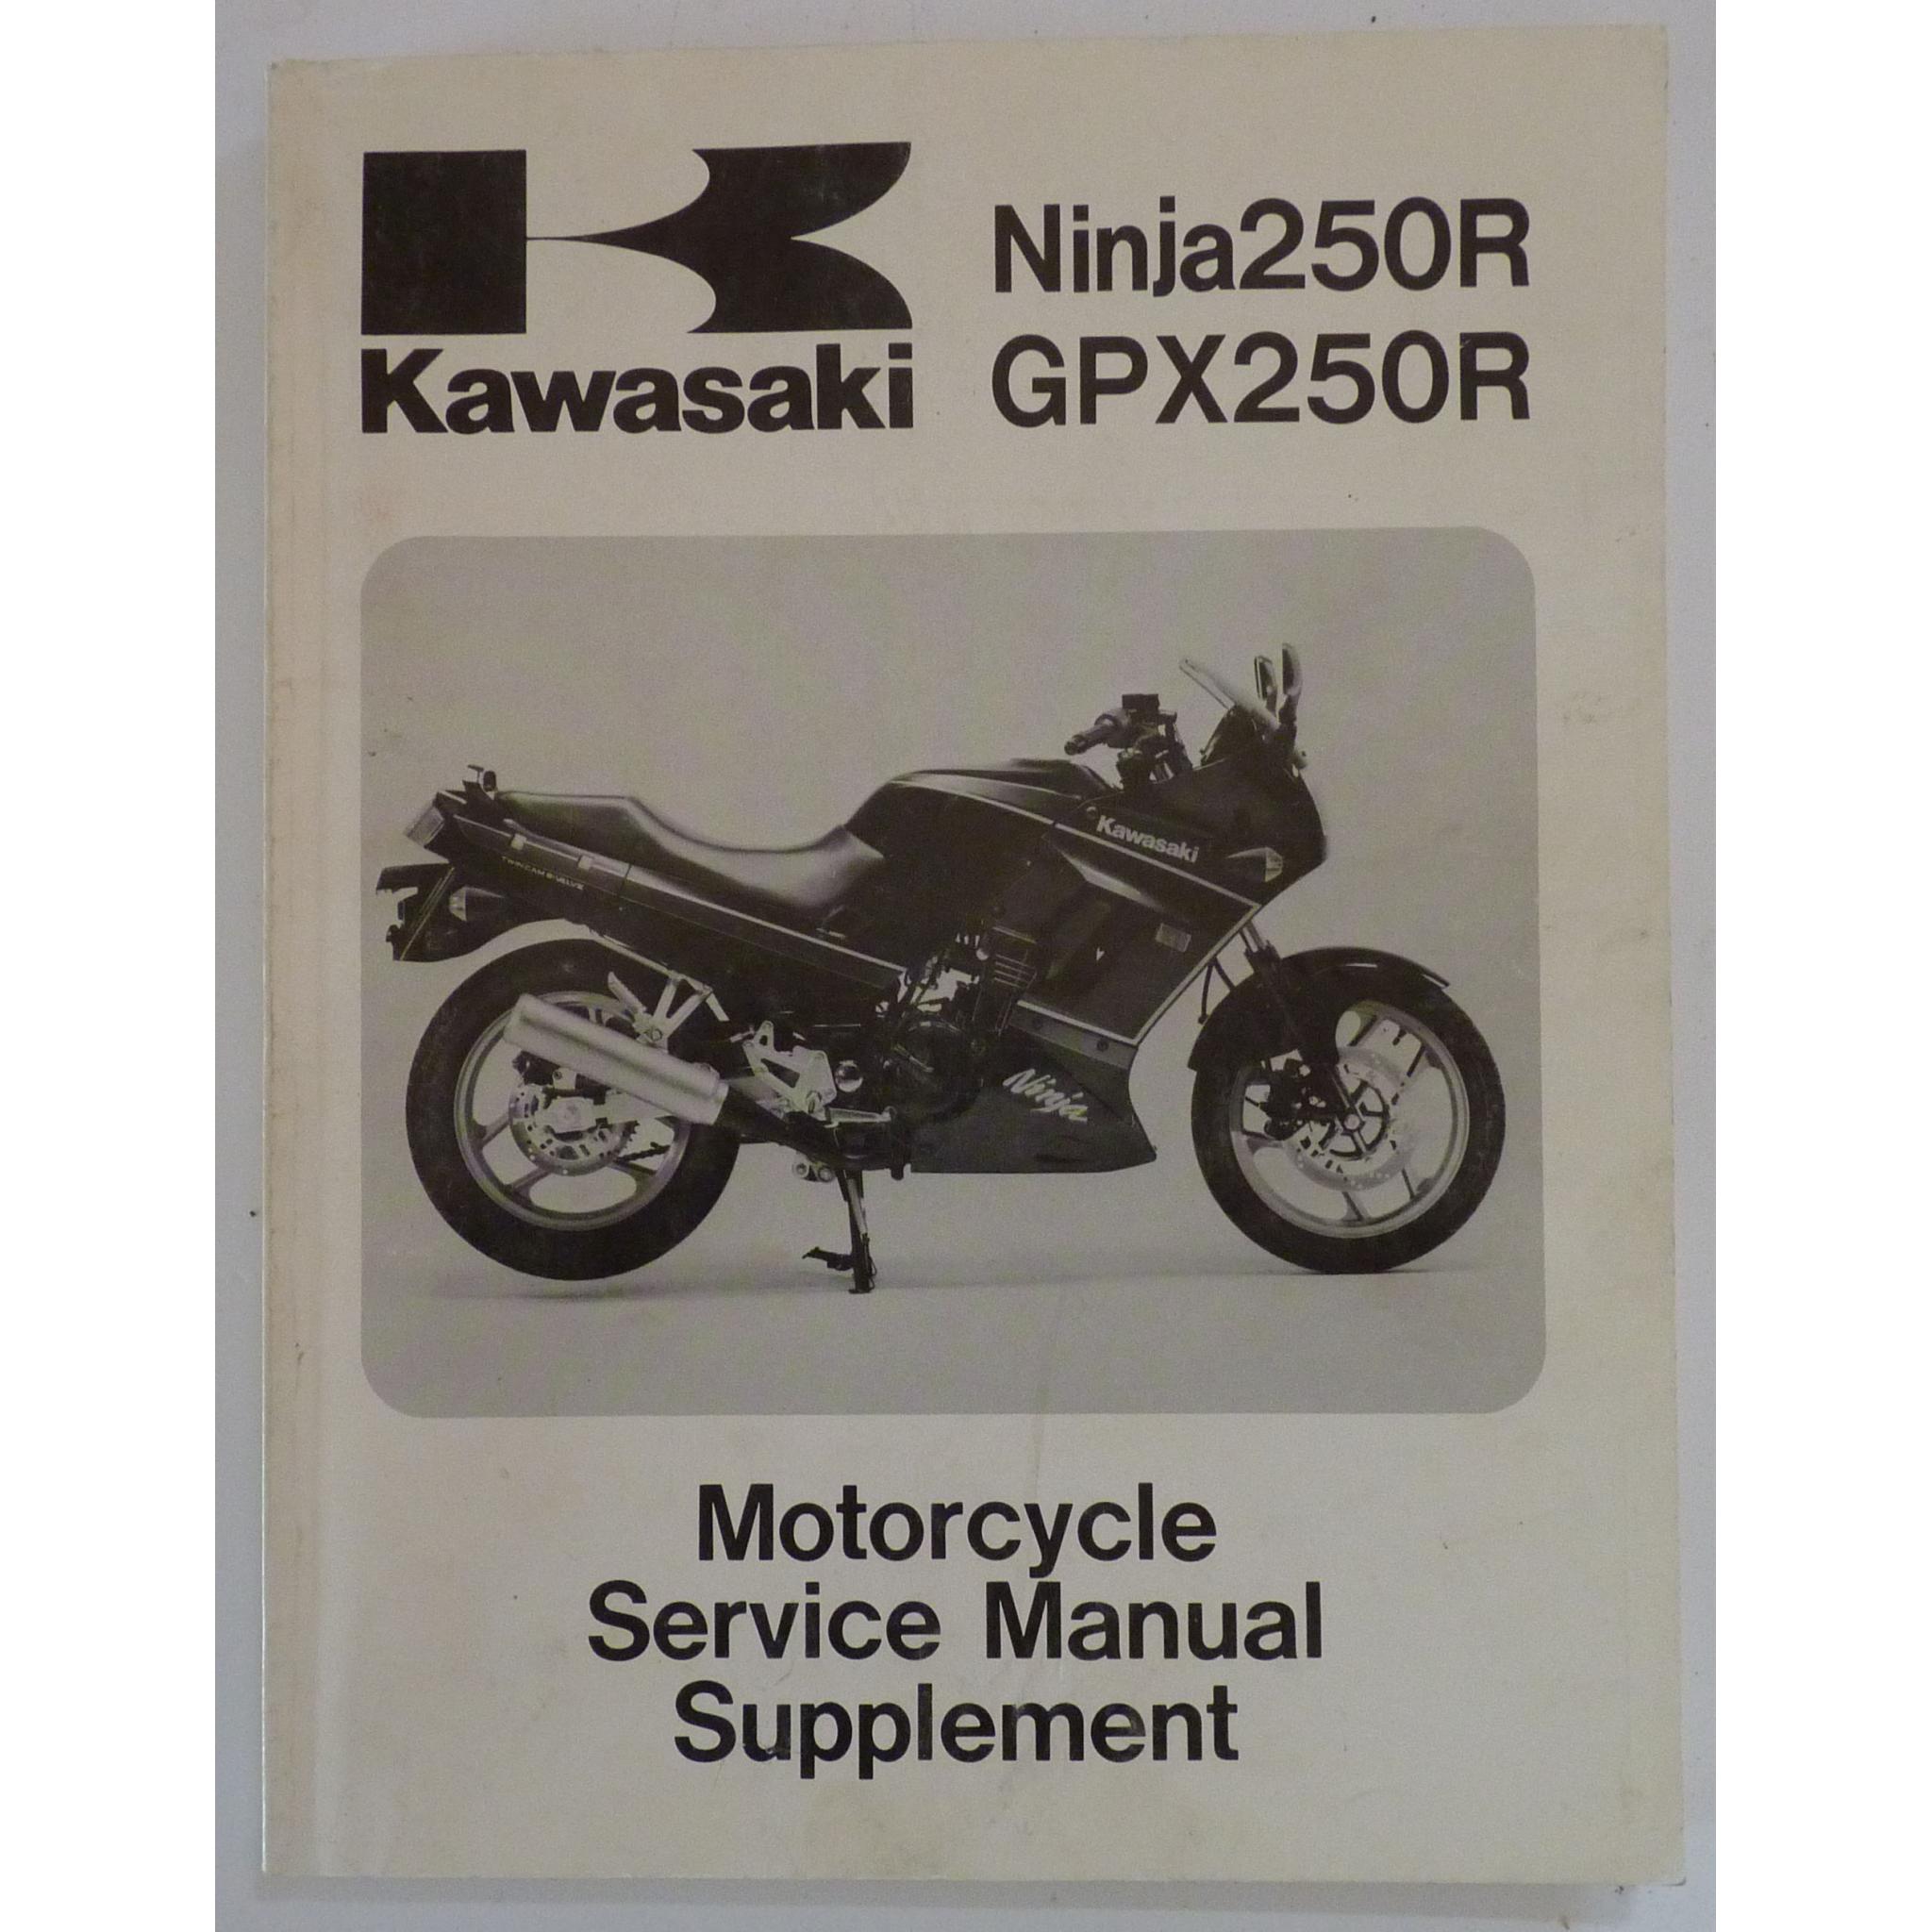 Kawasaki Ninja 250R and Motorcycle Service Manual